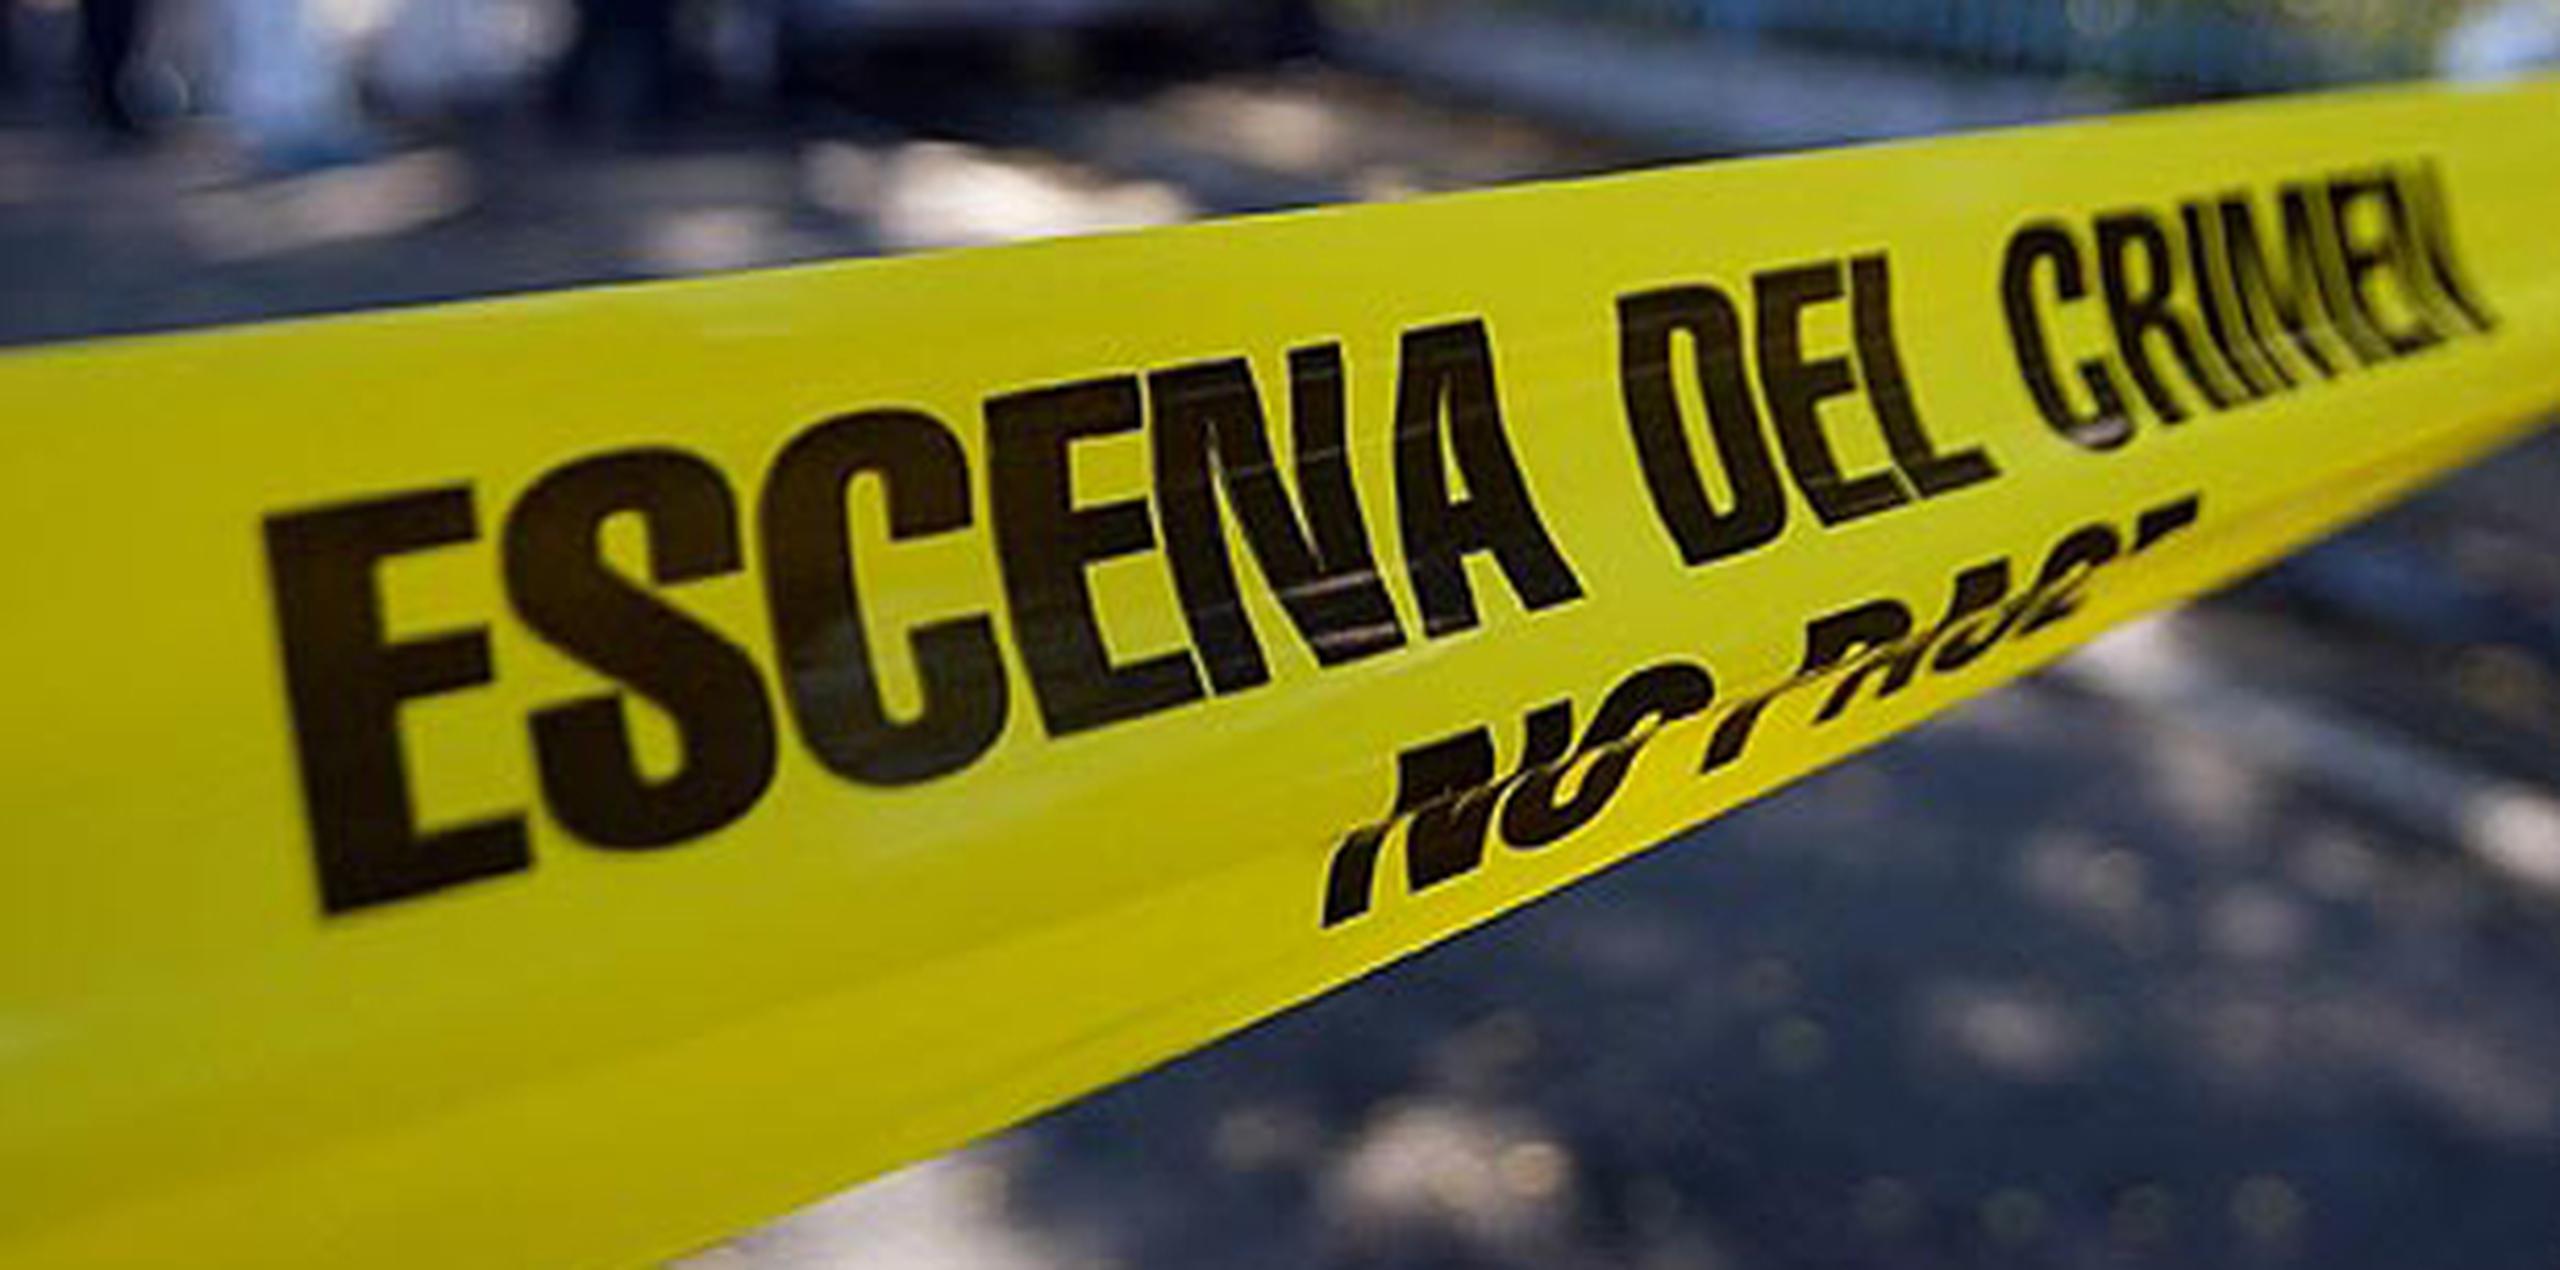 La Policía identificó a la víctima del asesinato en San Juan, como José A. Ferrer Benítez, de 42 años y residente de Carolina. (Archivo)